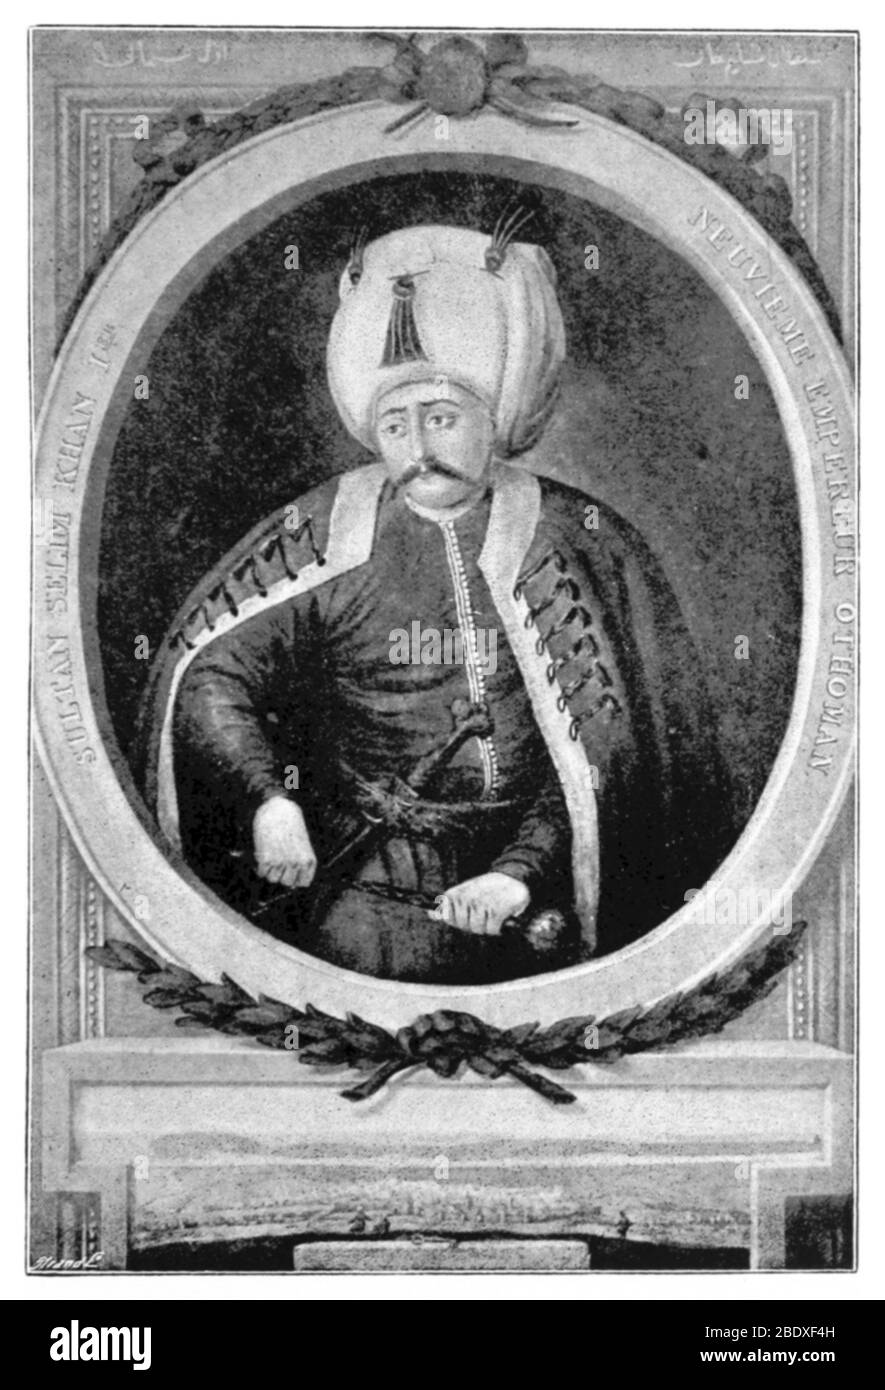 Selim I, Ottoman Sultan Stock Photo